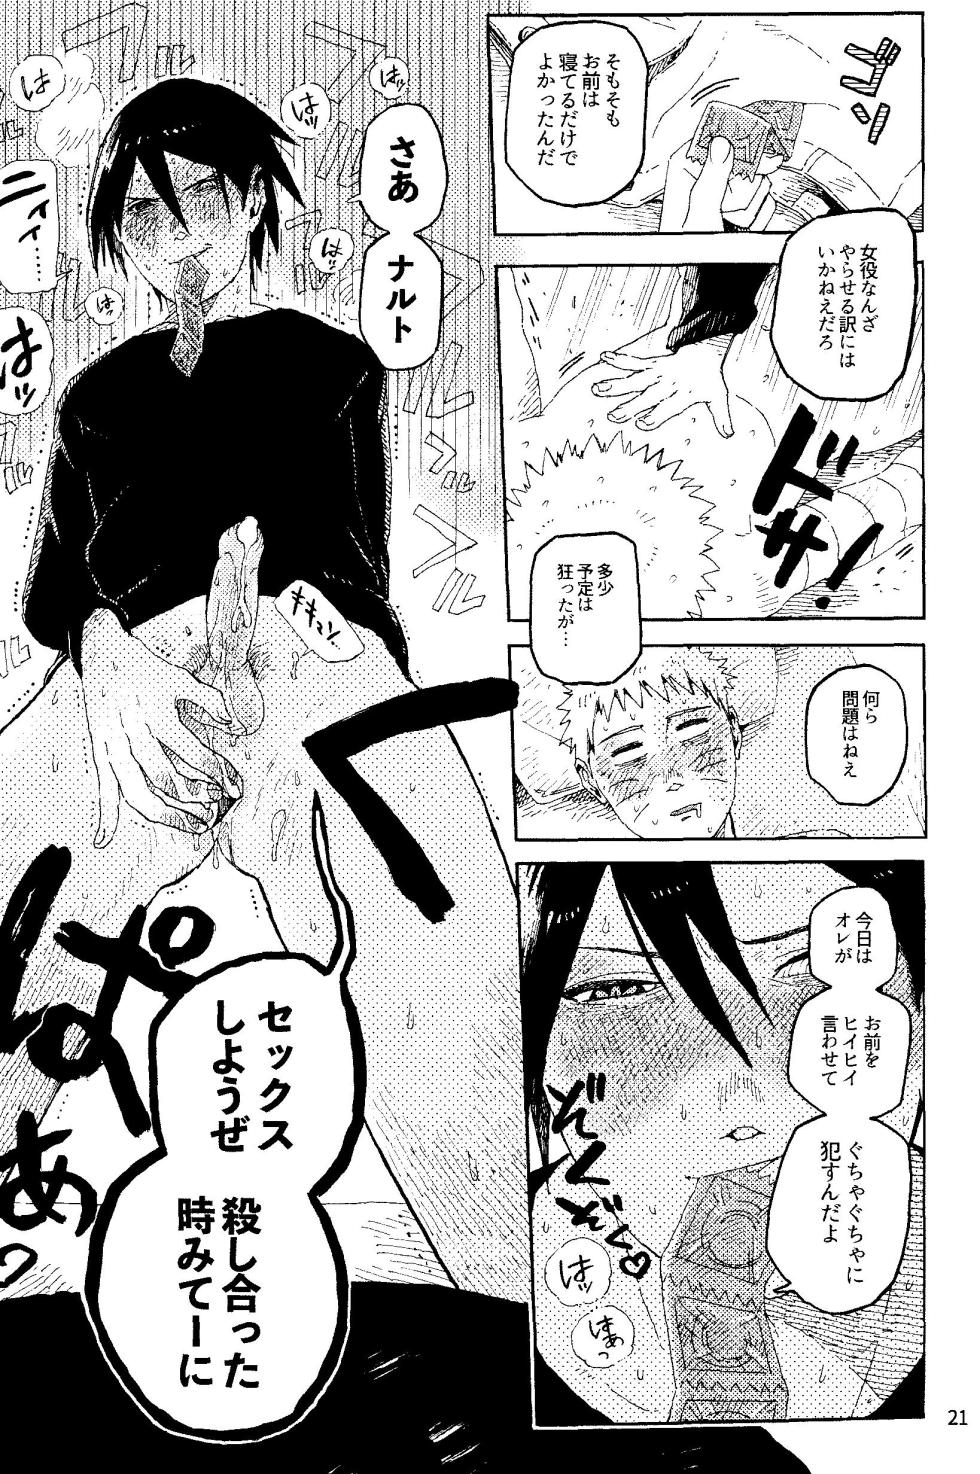 [Mutamuta Land (Mutako)] THE FIRST ep 7.5 (Naruto) - Page 23